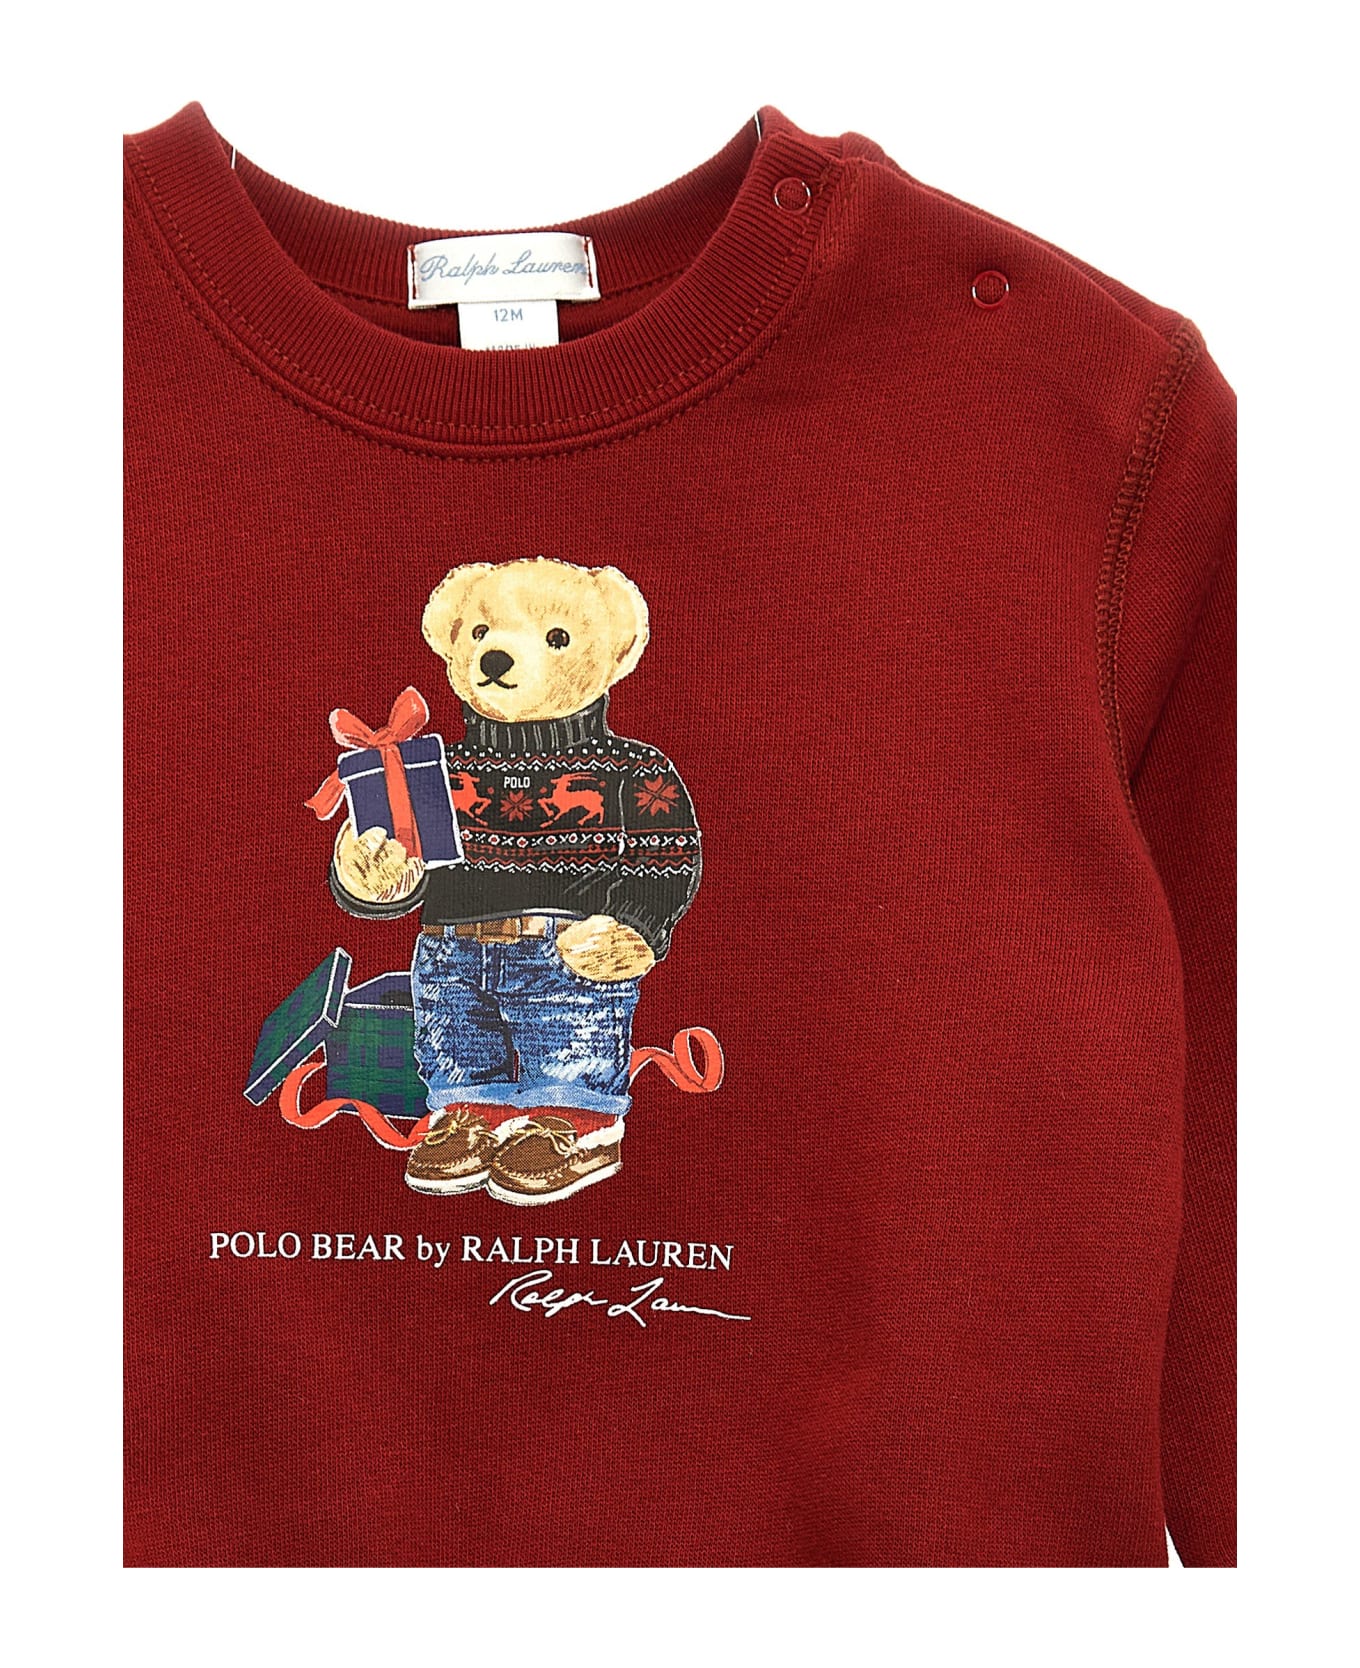 Polo Ralph Lauren 'bear' Sweatshirt - Bordeaux